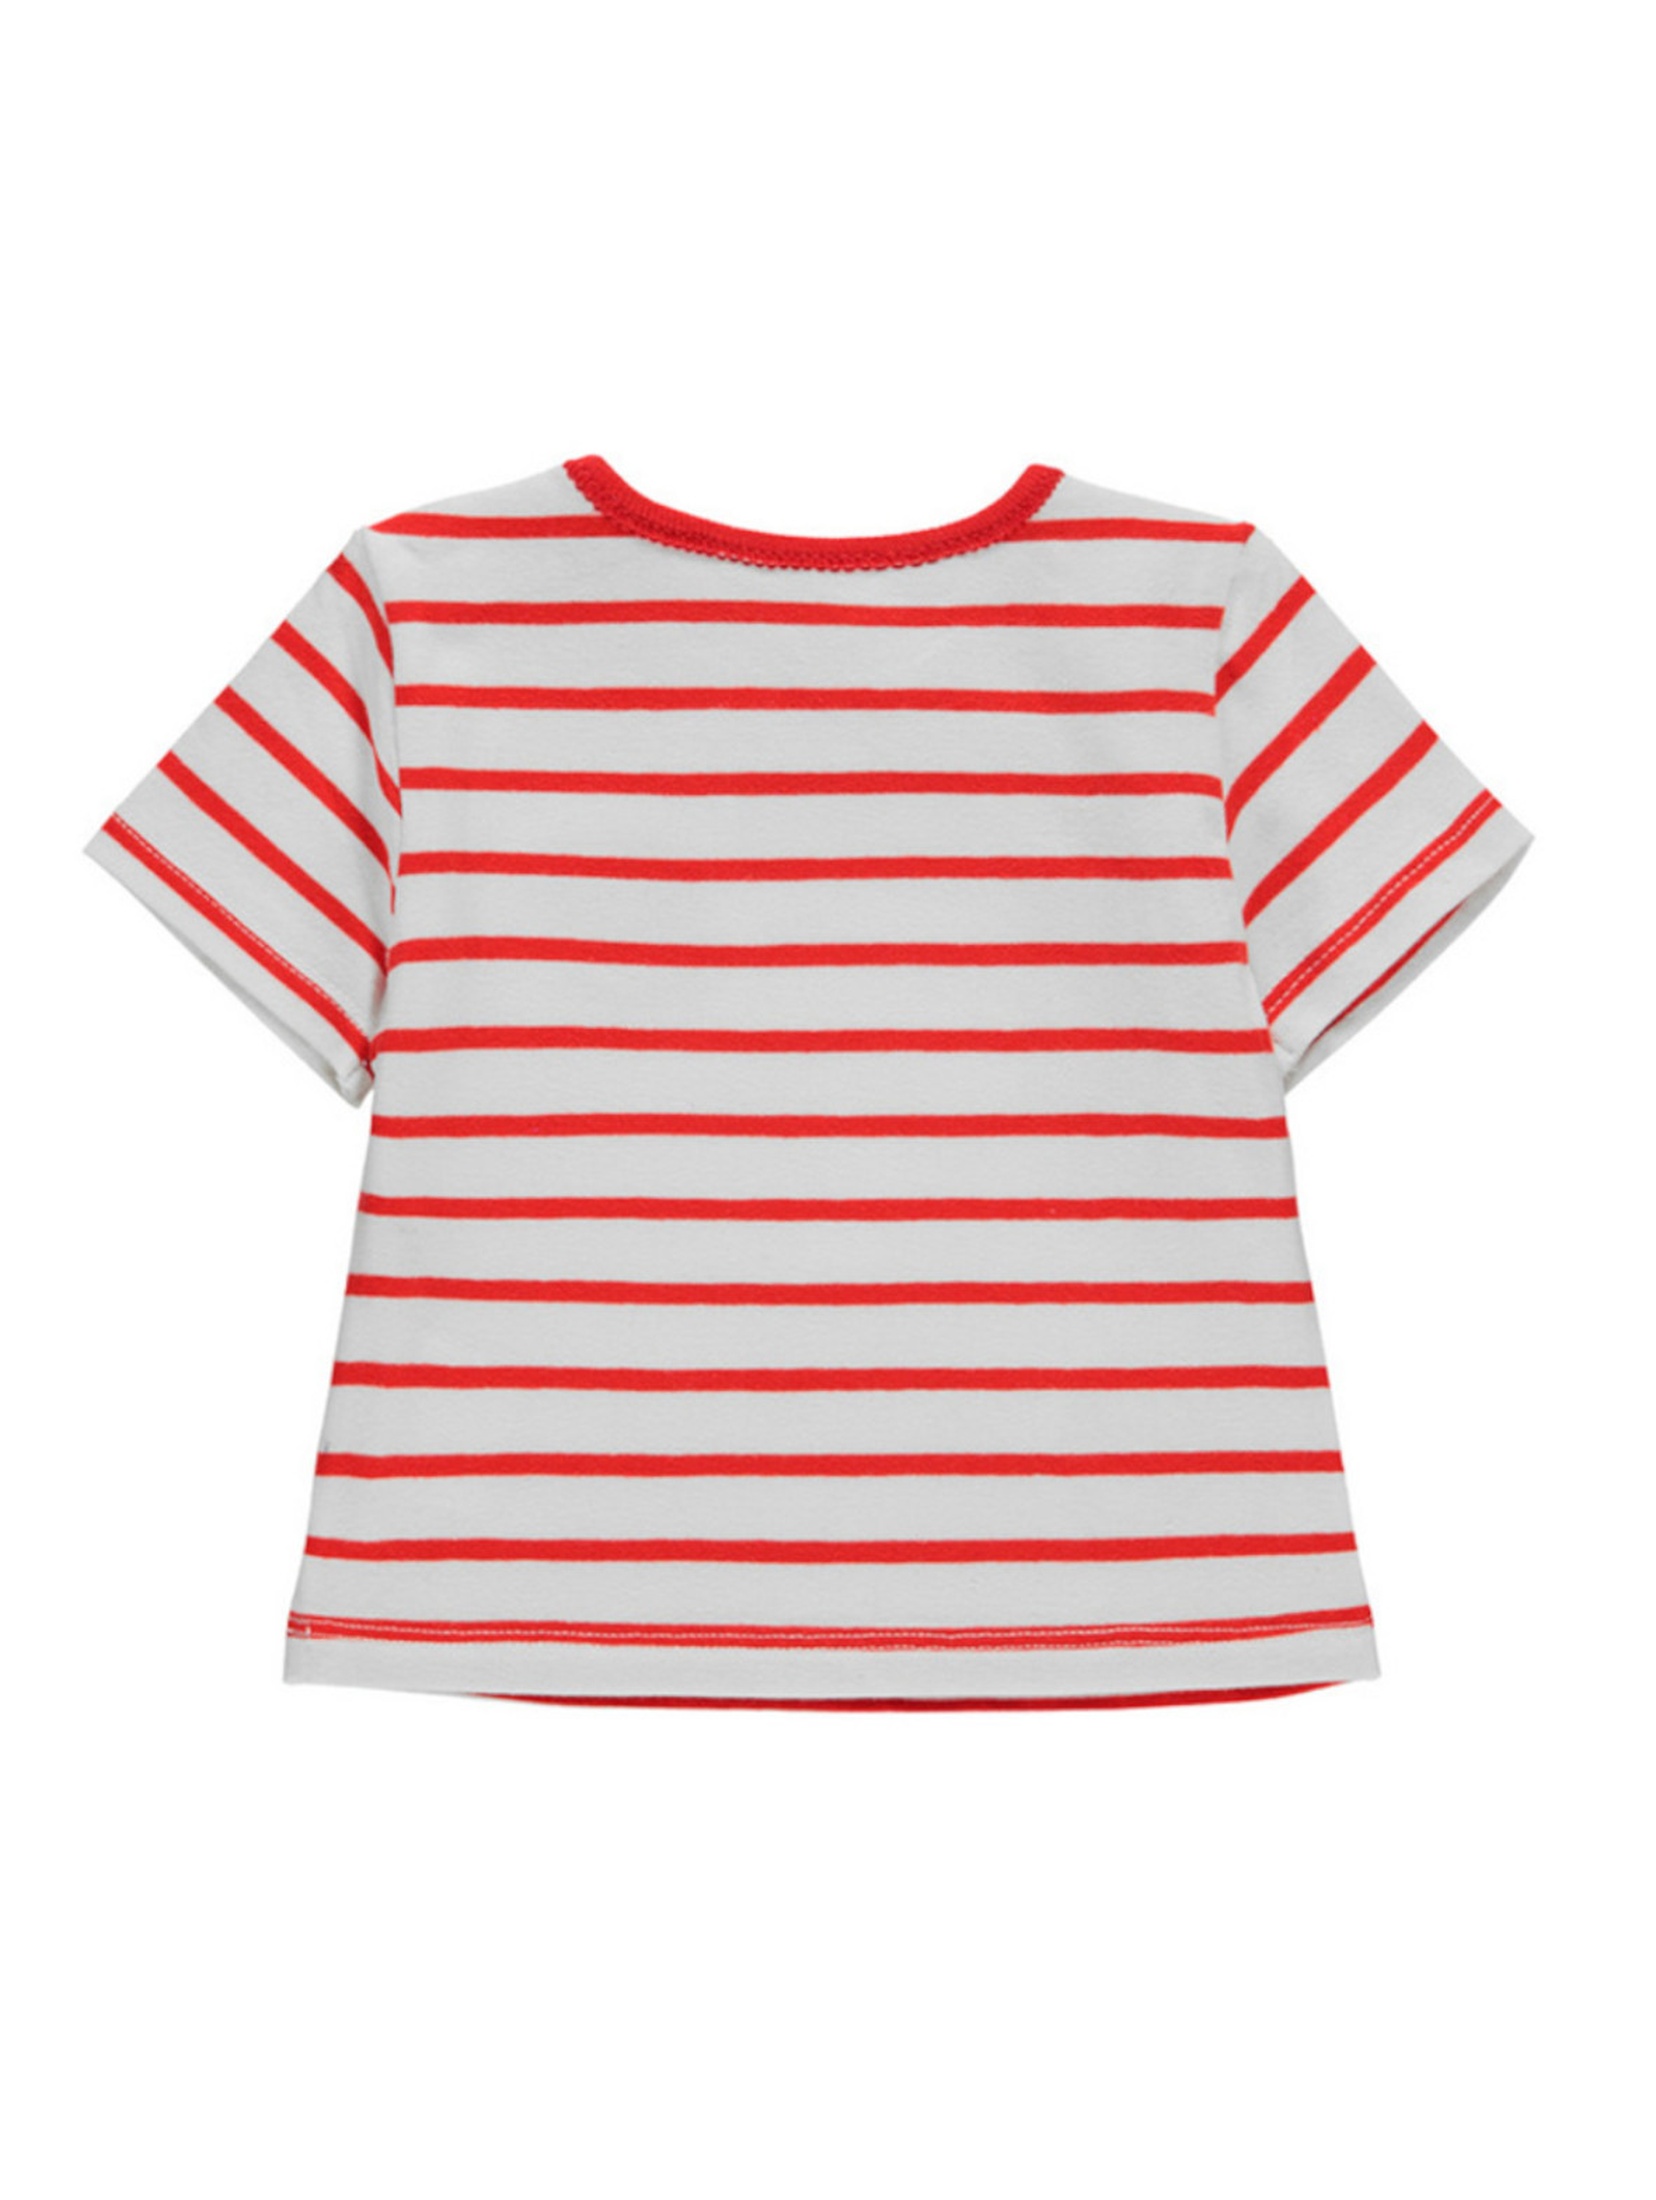 T-shirt niemowlęcy czerwono-biały paski